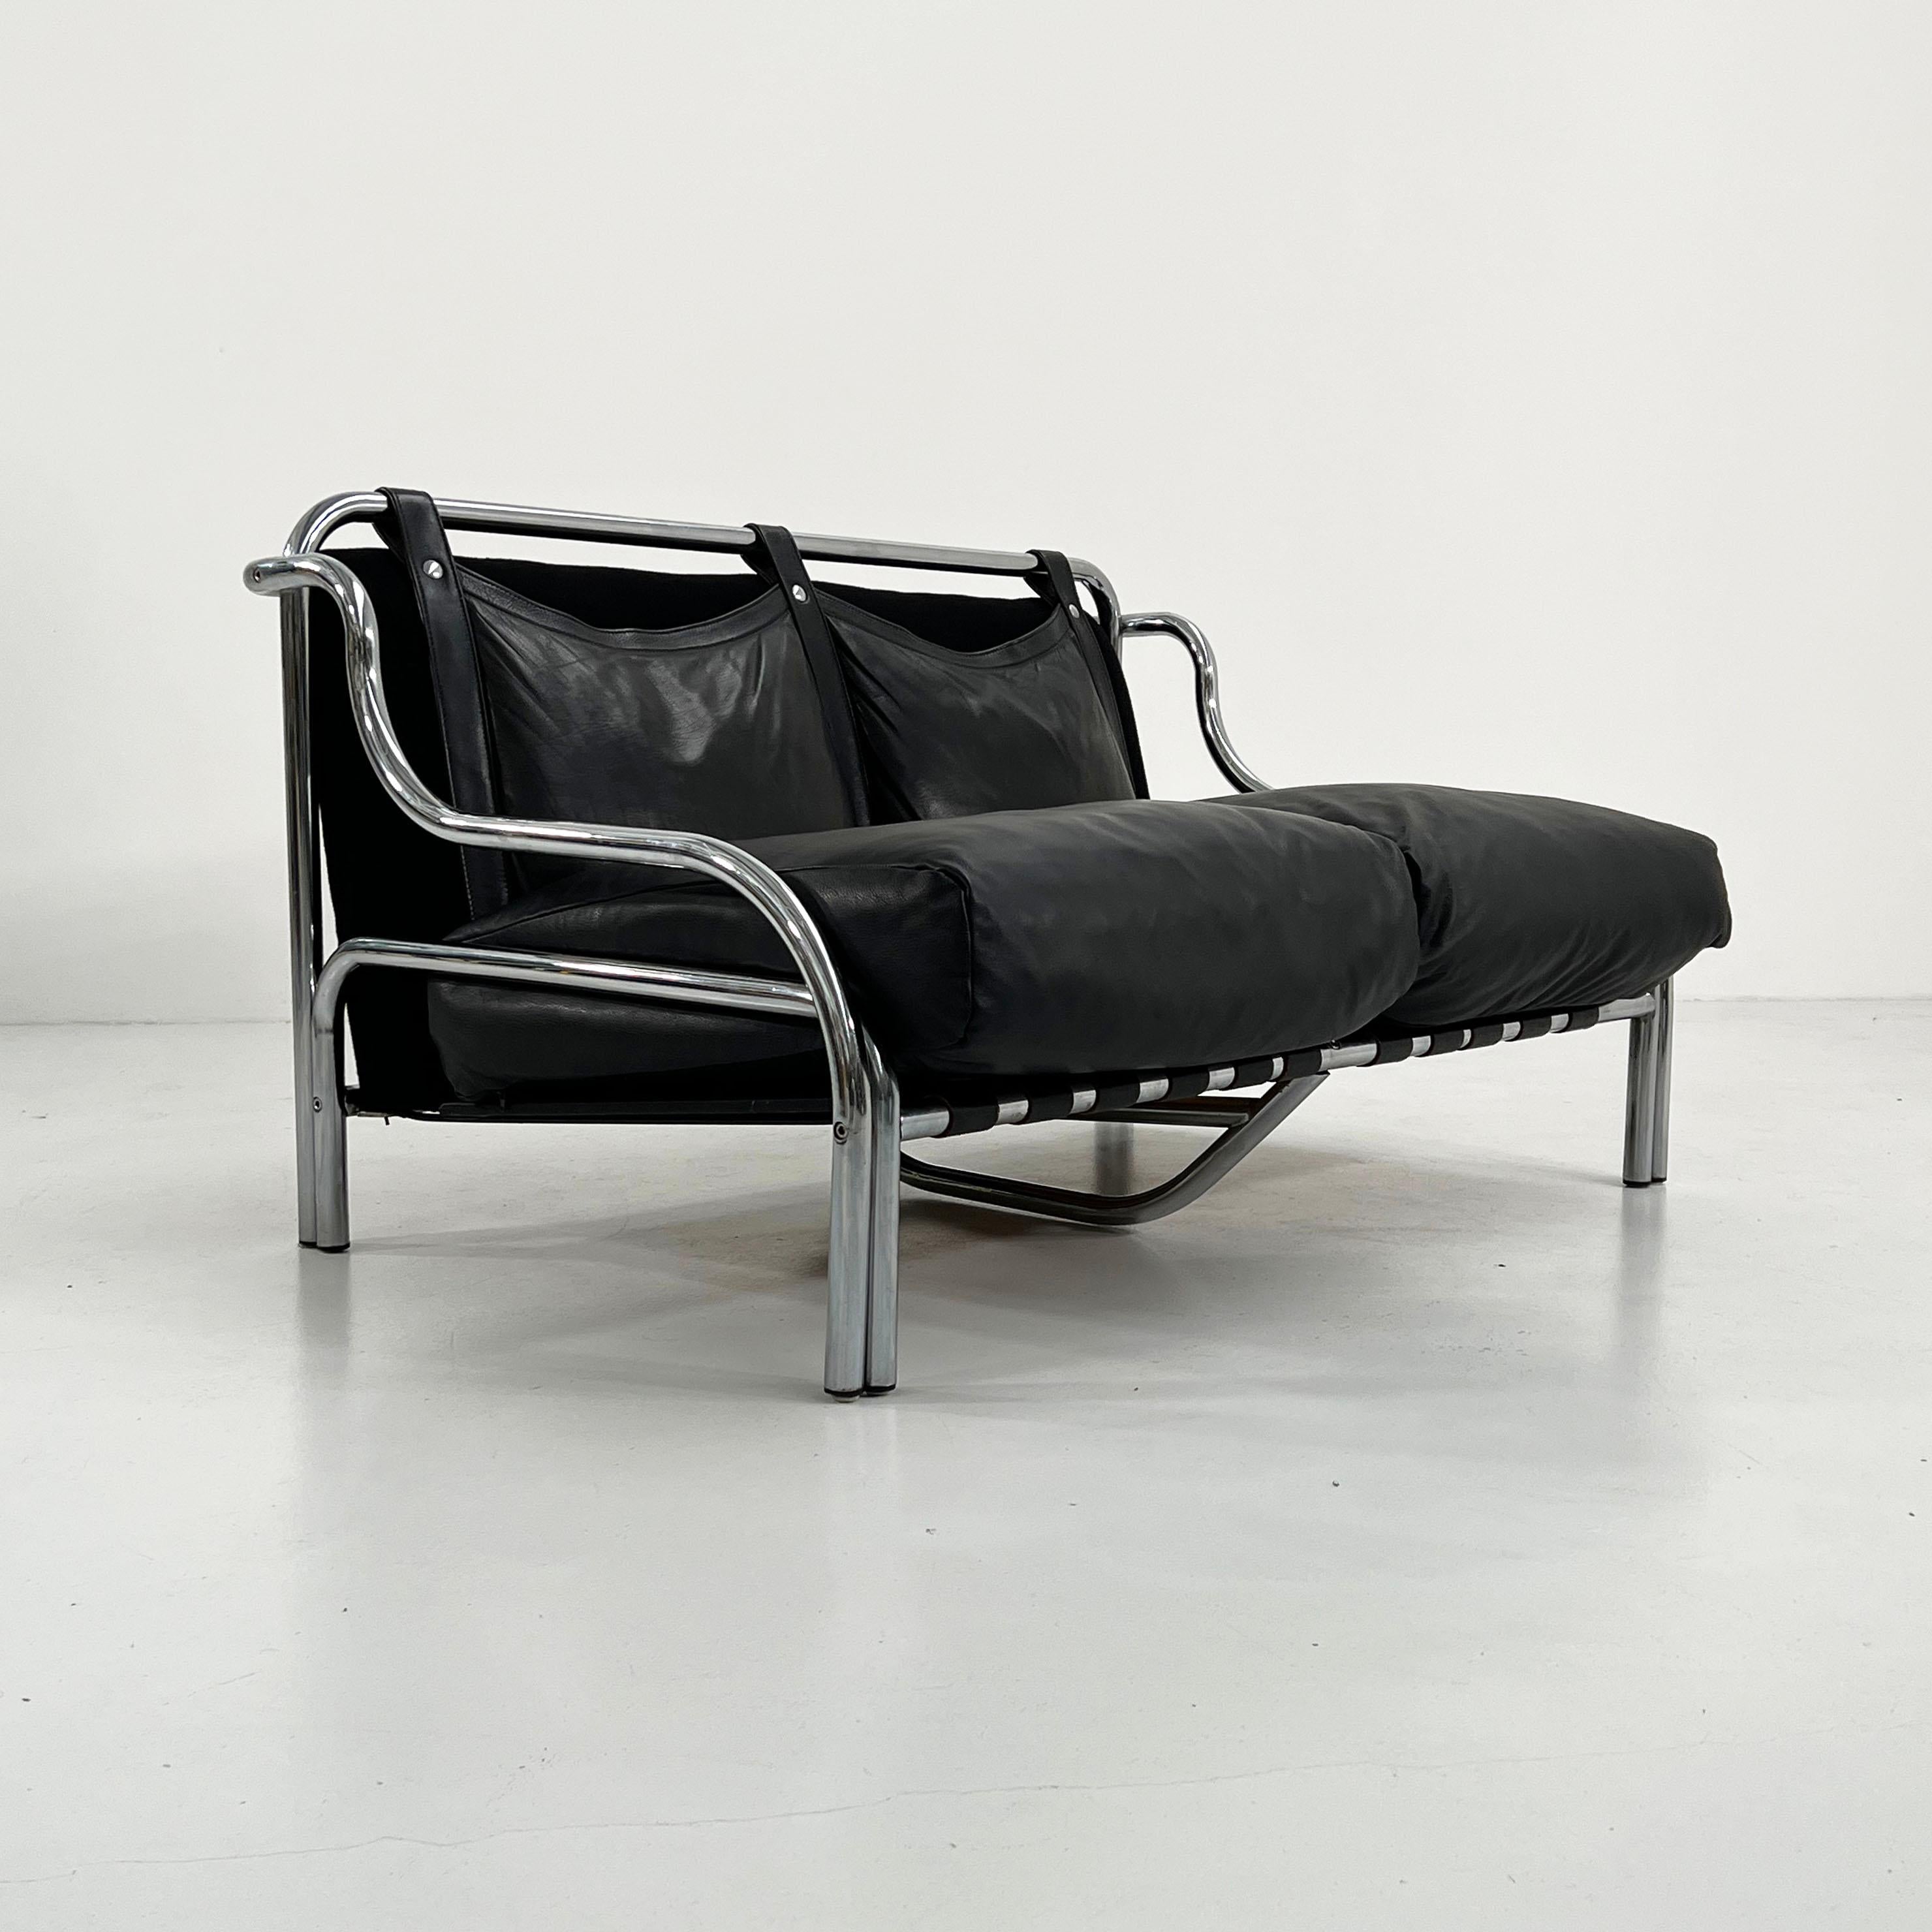 Italian Stringa 2-seater Leather Sofa by Gae Aulenti for Poltronova, 1960s For Sale